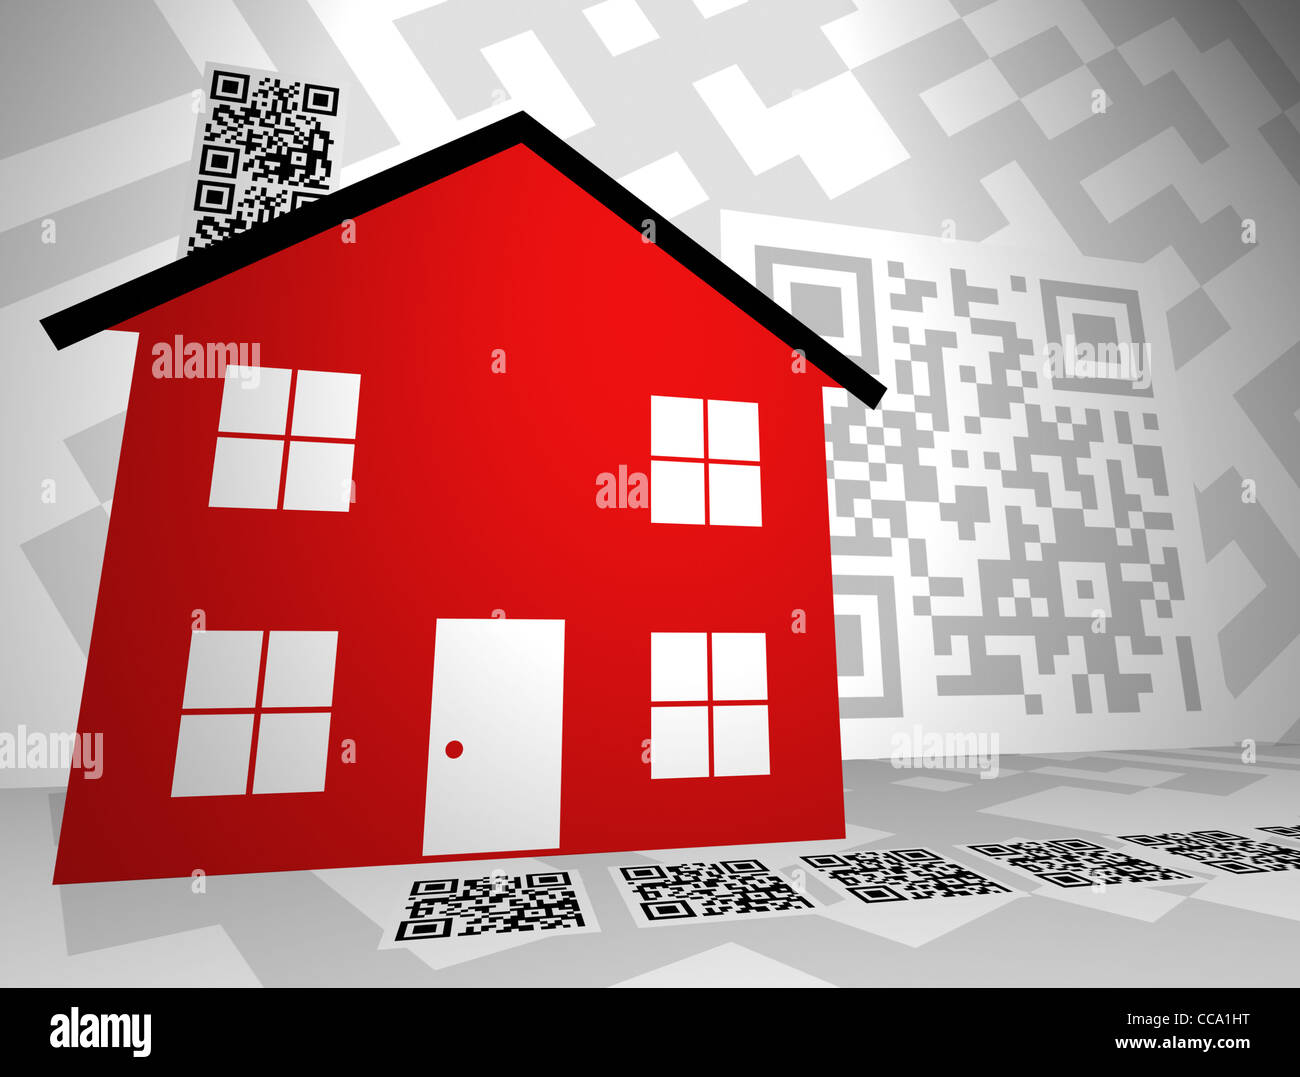 Generico codici QR in un bene immobiliare design a tema. Essi vengono ora utilizzati per marketing immobiliare, retail, elencando info, ecc. Foto Stock